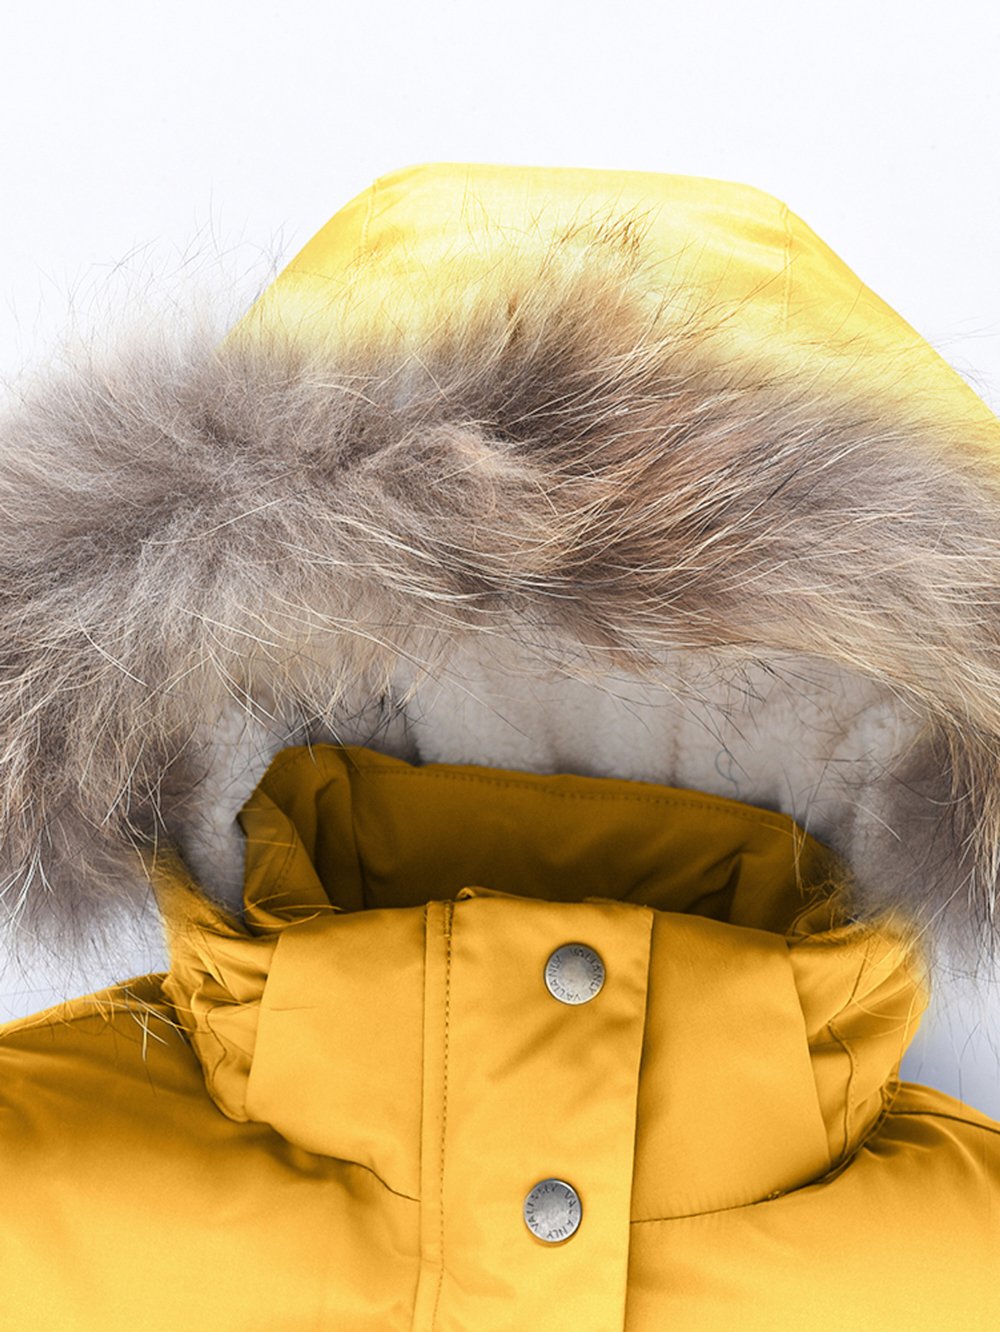 Купить куртку парку для девочки оптом от производителя недорого в Москве 9332J 1